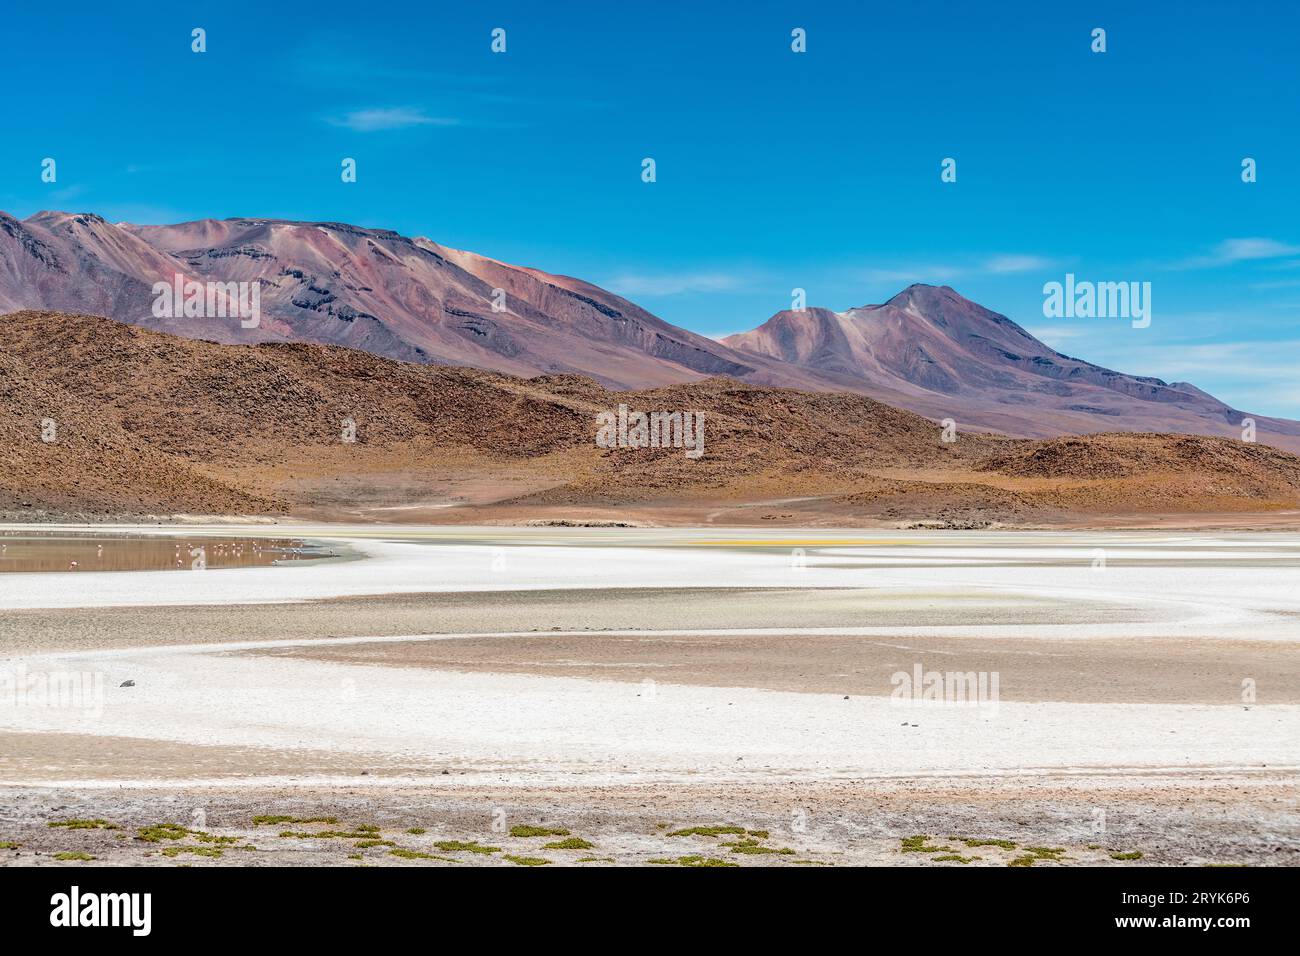 Fauna selvatica nella laguna rossa nell'altiplano boliviano Foto Stock